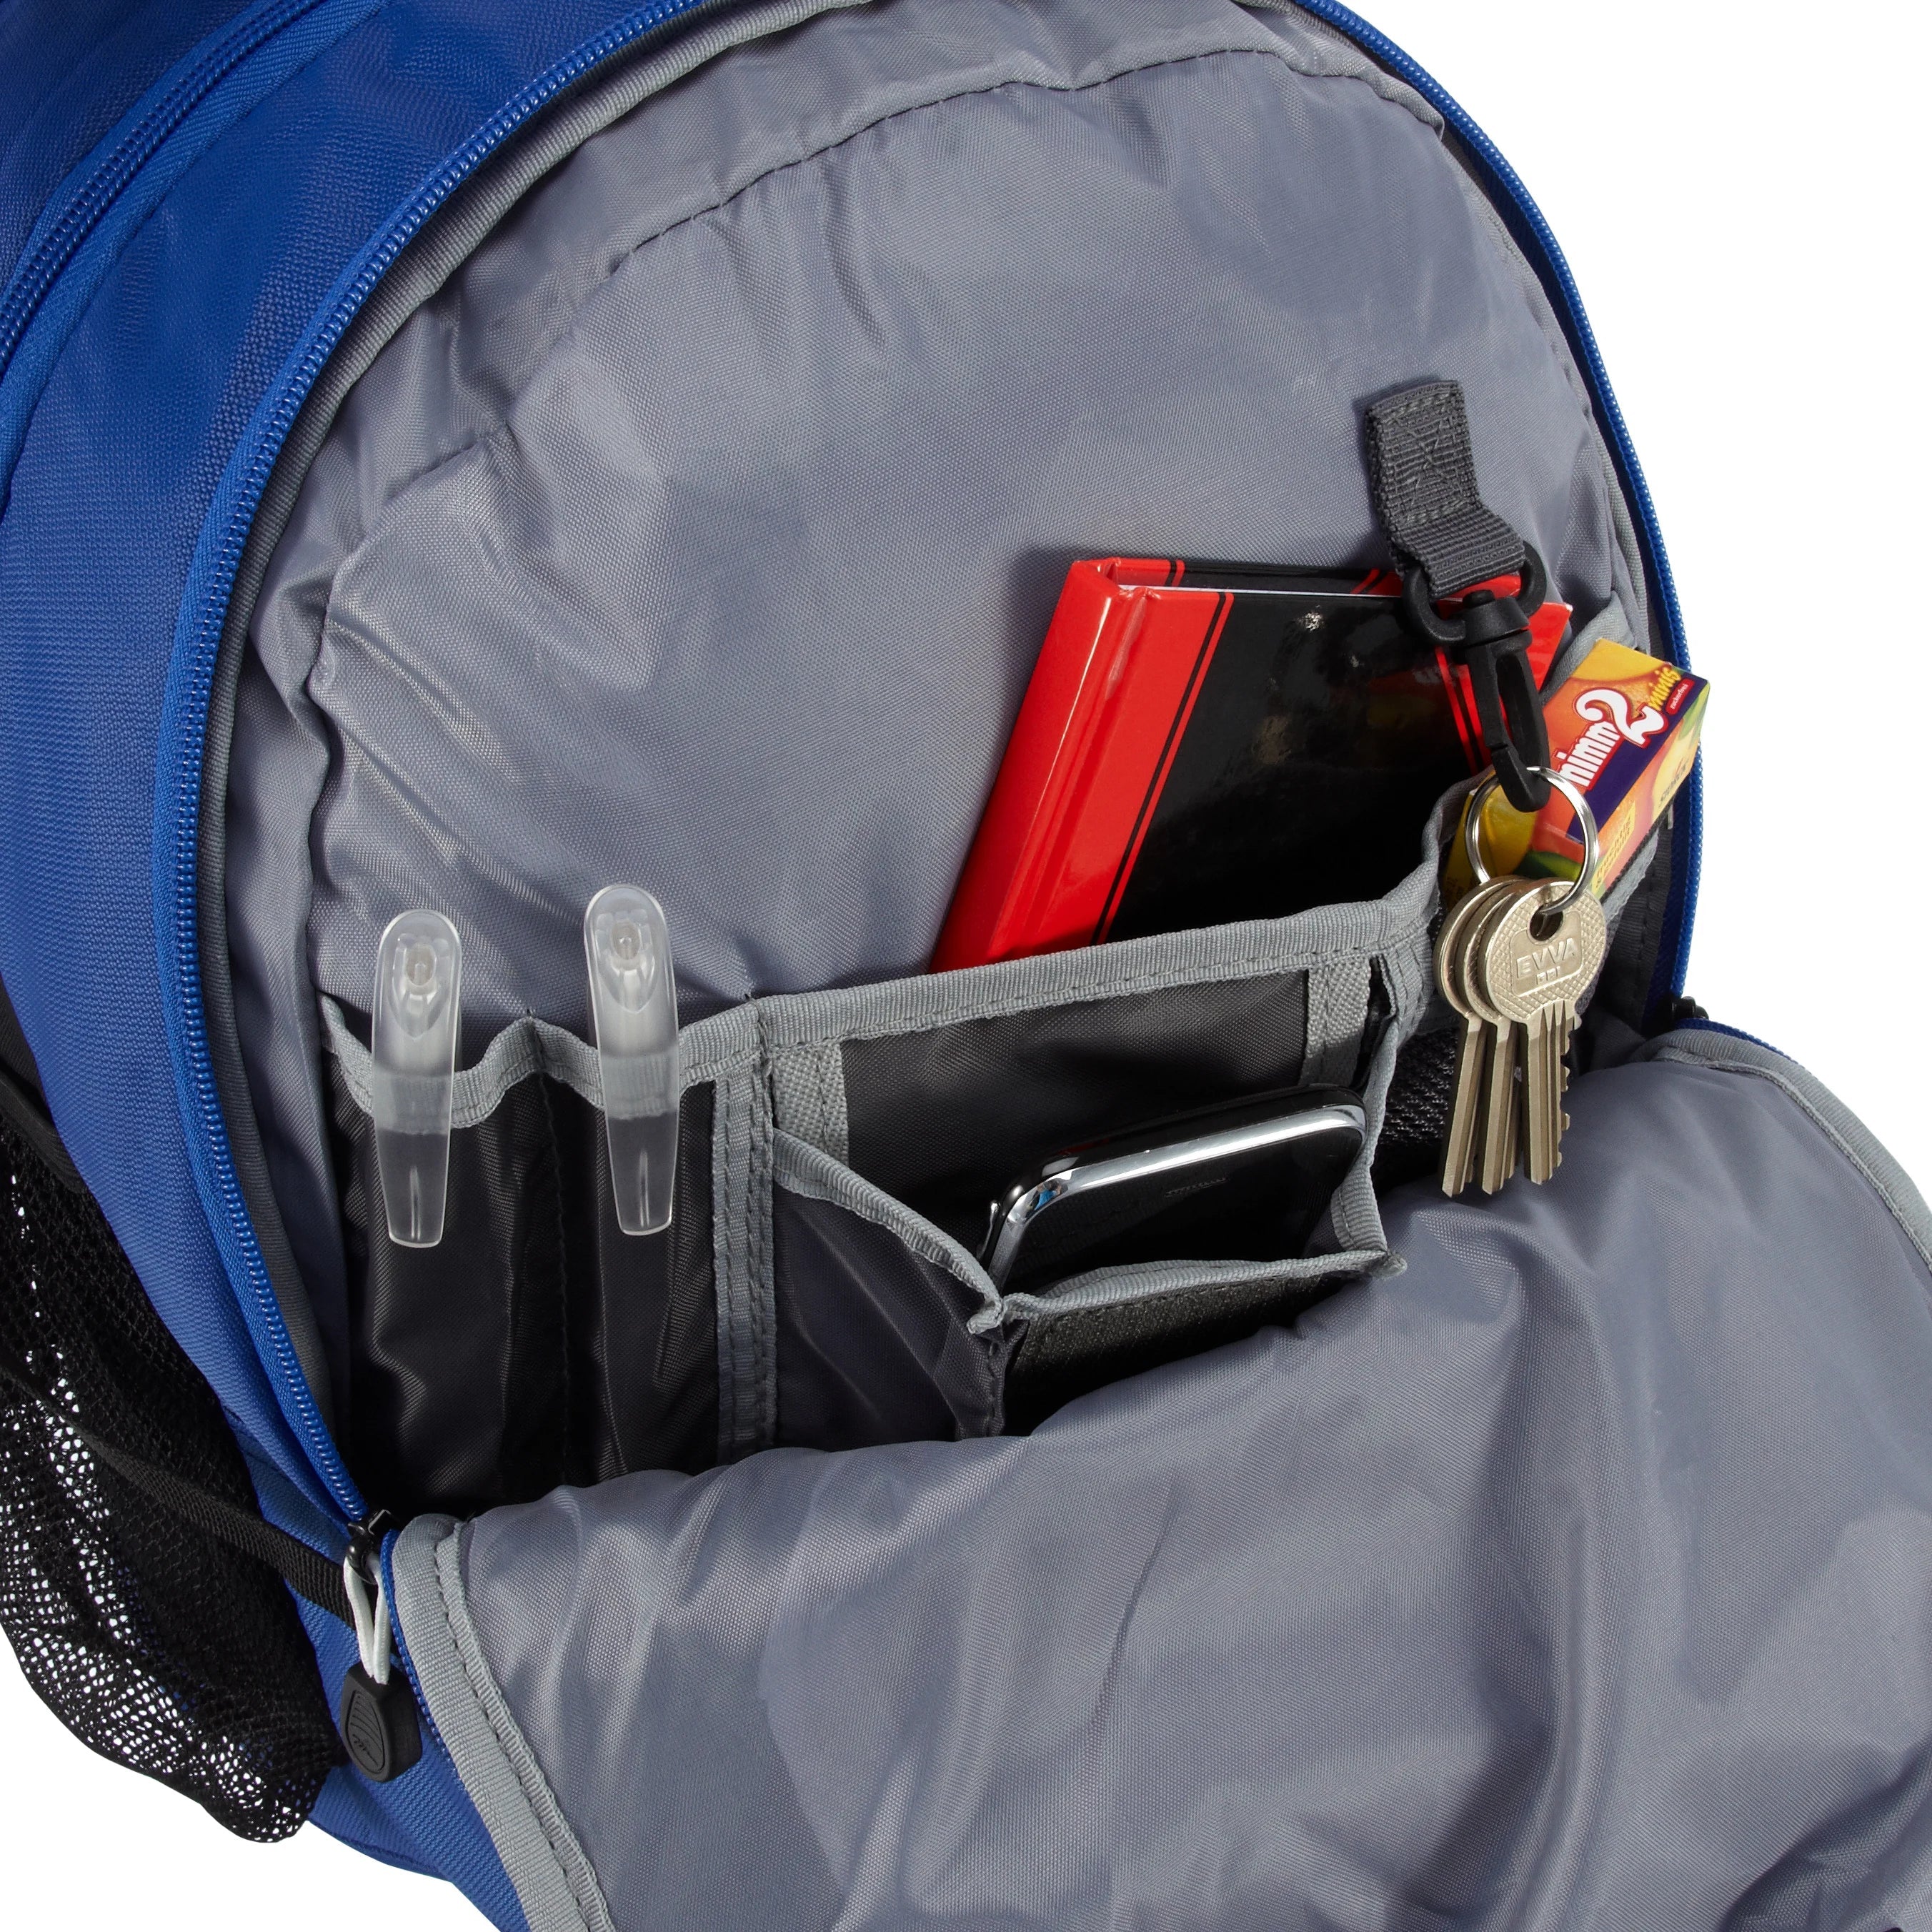 High Sierra School Backpacks sac à dos avec compartiment pour ordinateur portable Aggro 49 cm - cobalt royal/blanc/noir